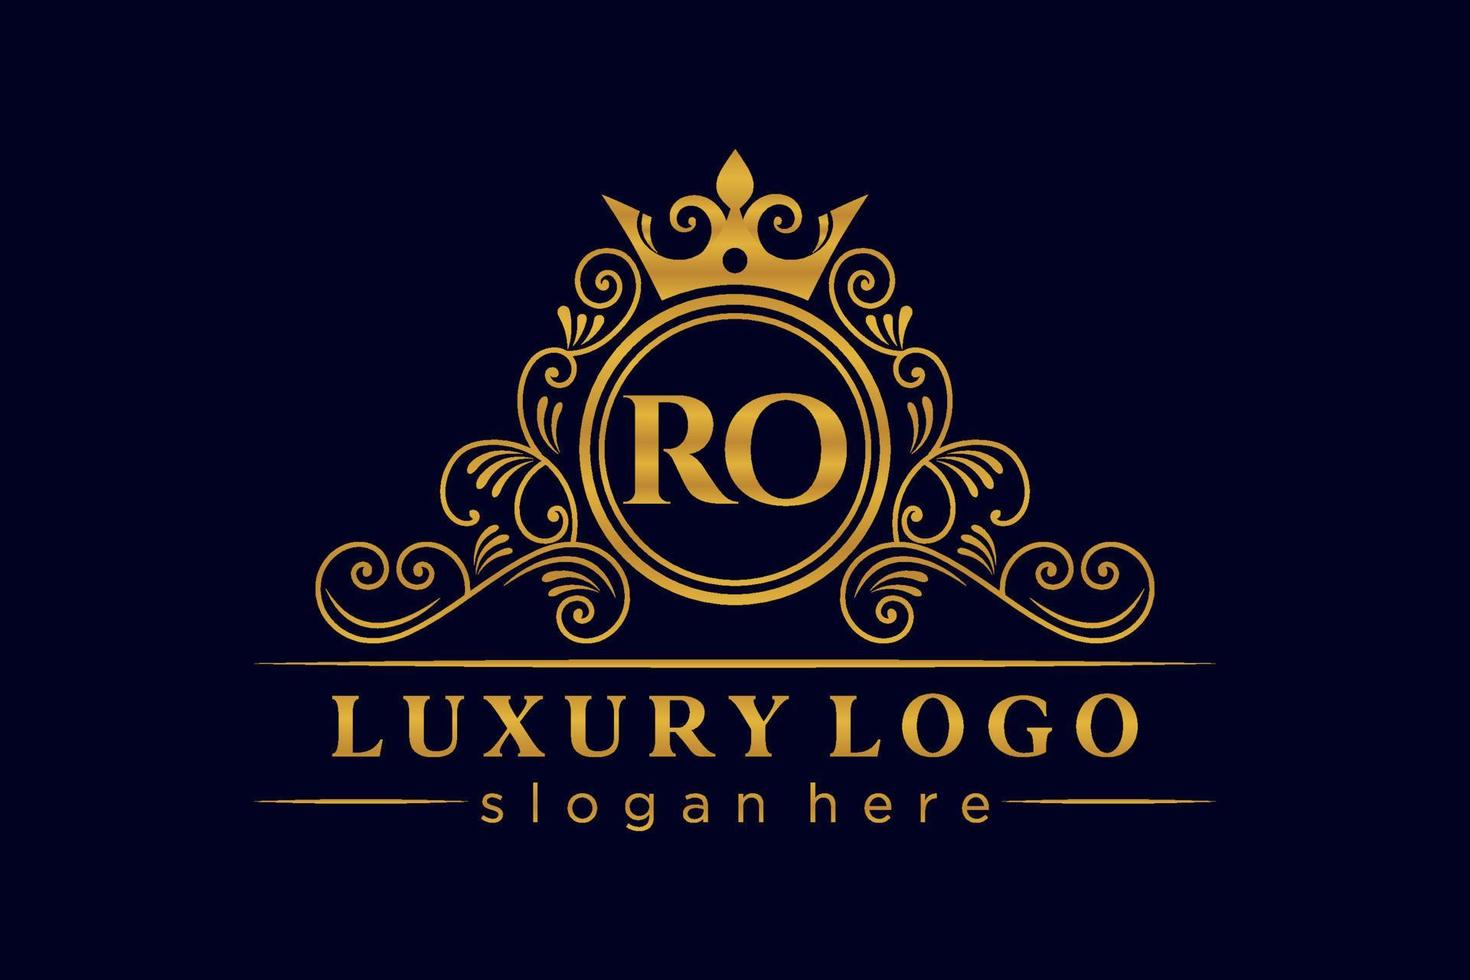 ro letra inicial oro caligráfico femenino floral dibujado a mano monograma heráldico antiguo estilo vintage lujo diseño de logotipo vector premium